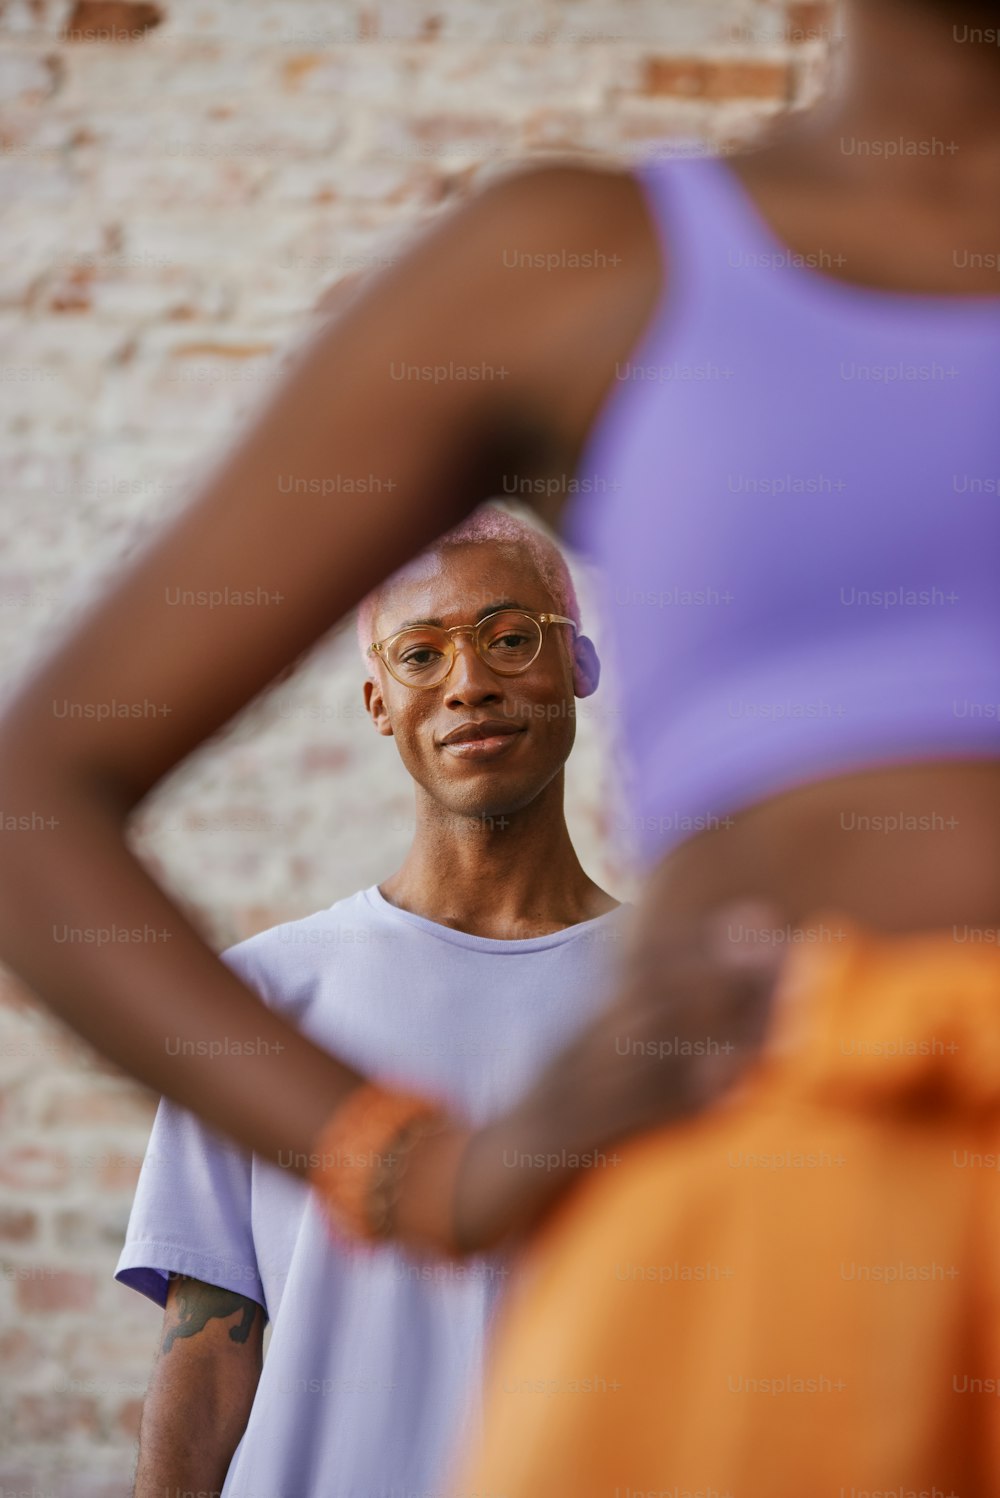 Ein Mann mit Brille, der vor einer Ziegelmauer steht